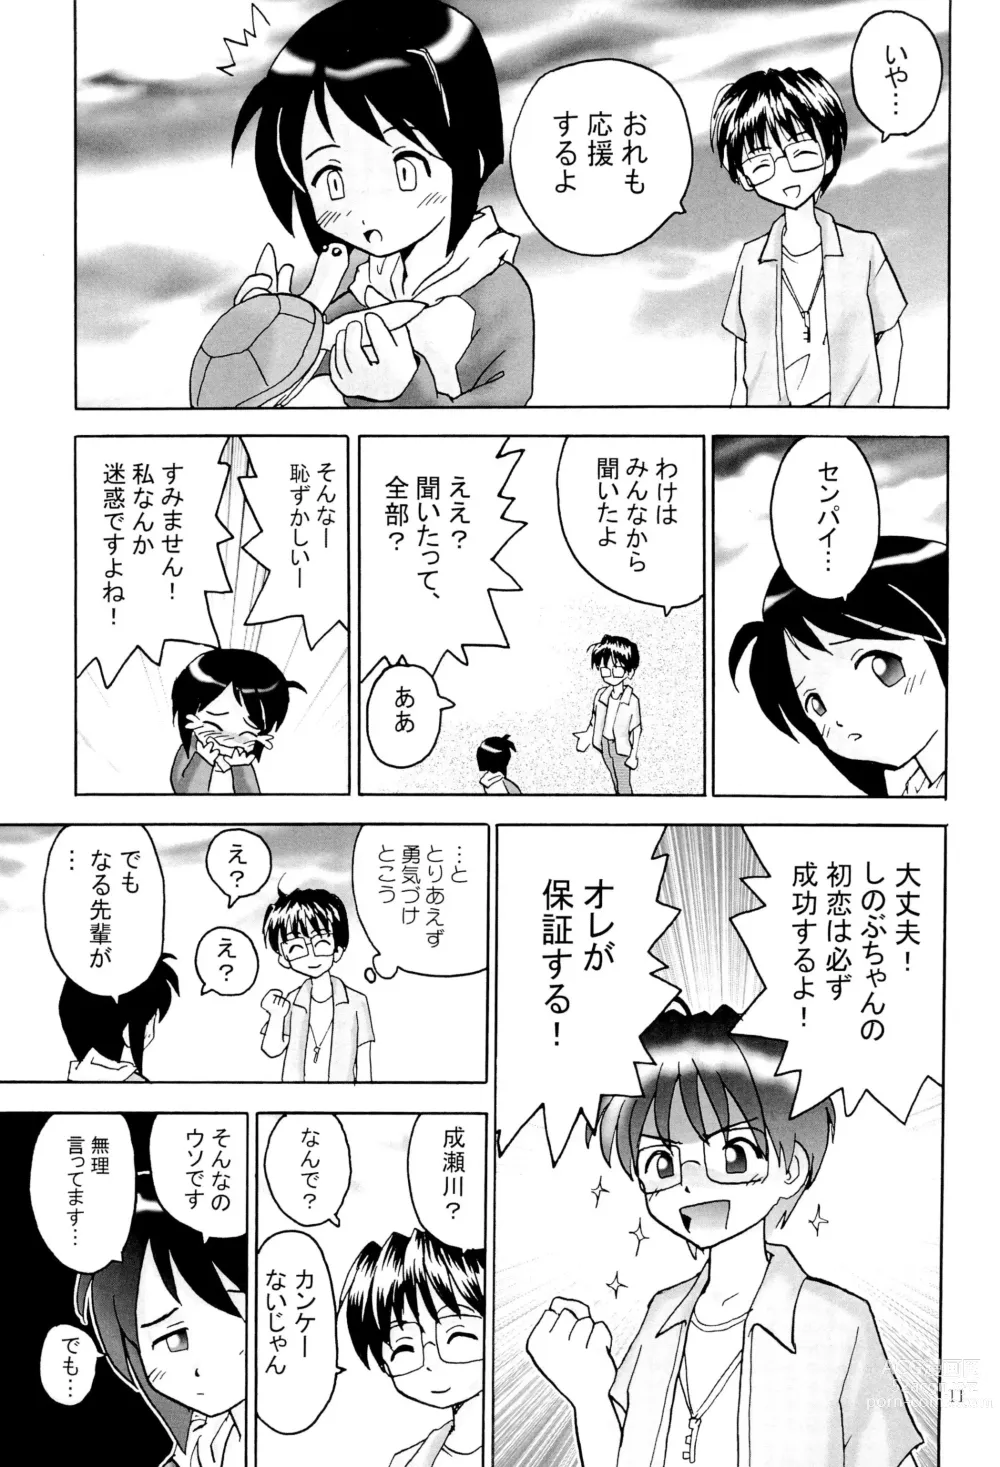 Page 13 of doujinshi Shino Buna